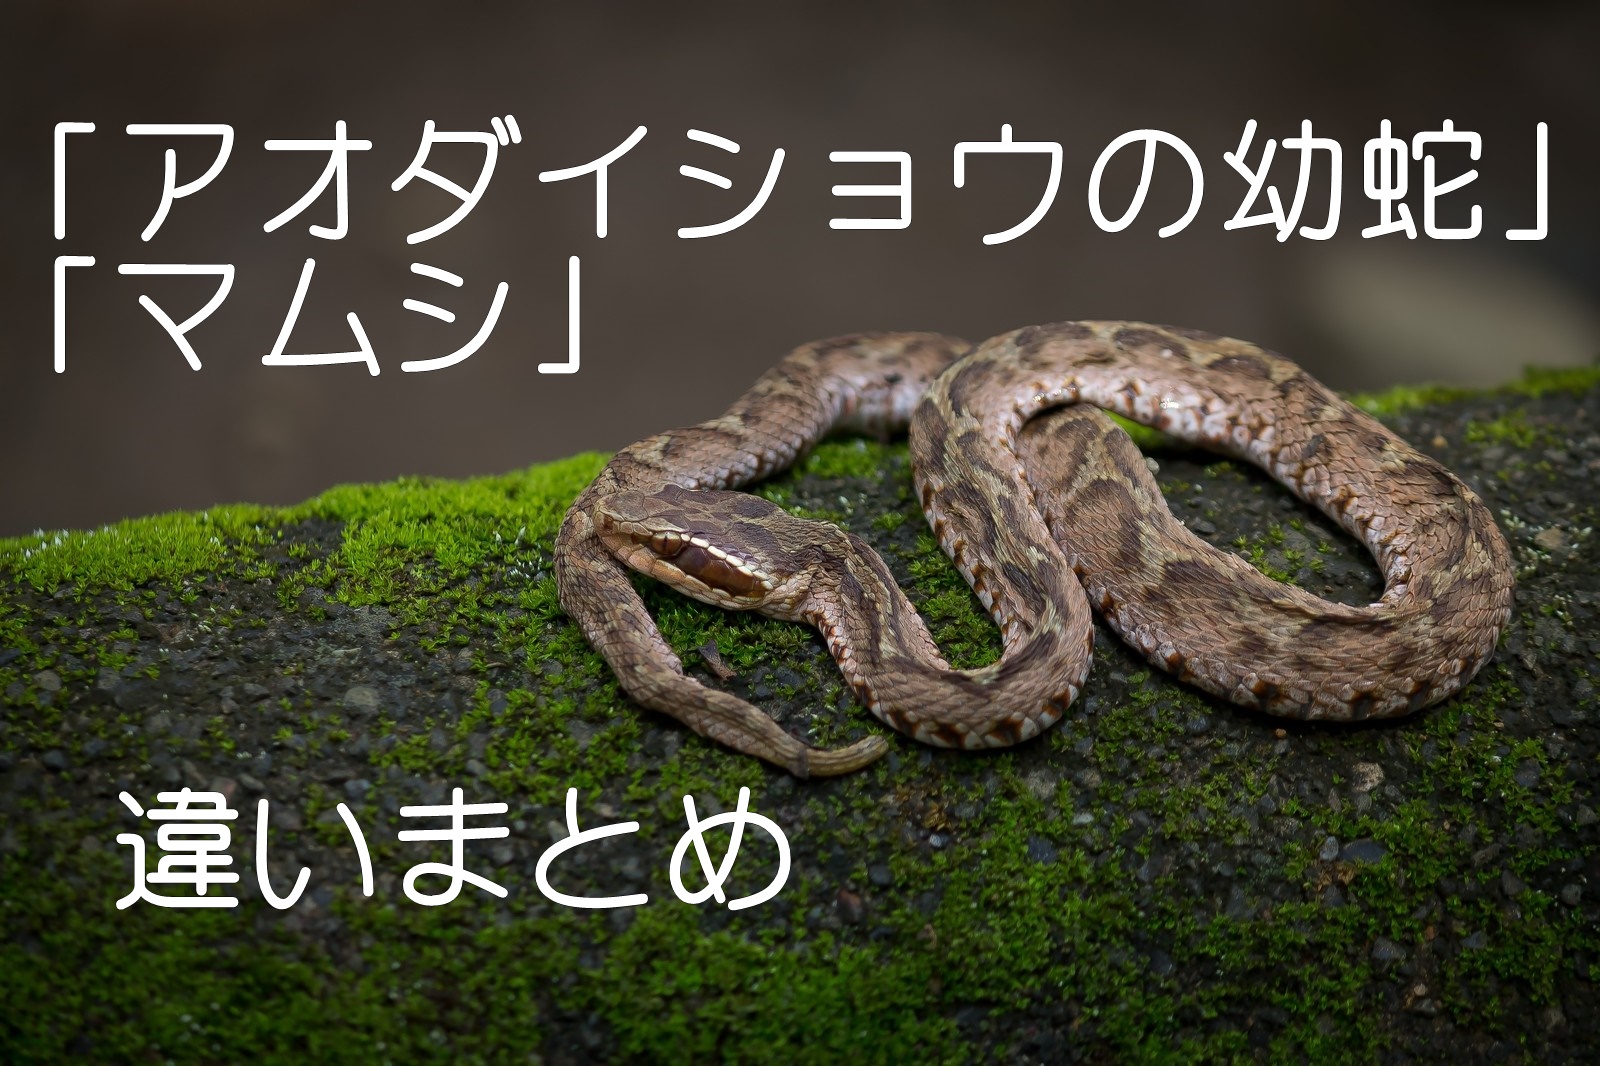 アオダイショウの幼蛇とマムシの違いを画像で比較してみた カナヘビもどき